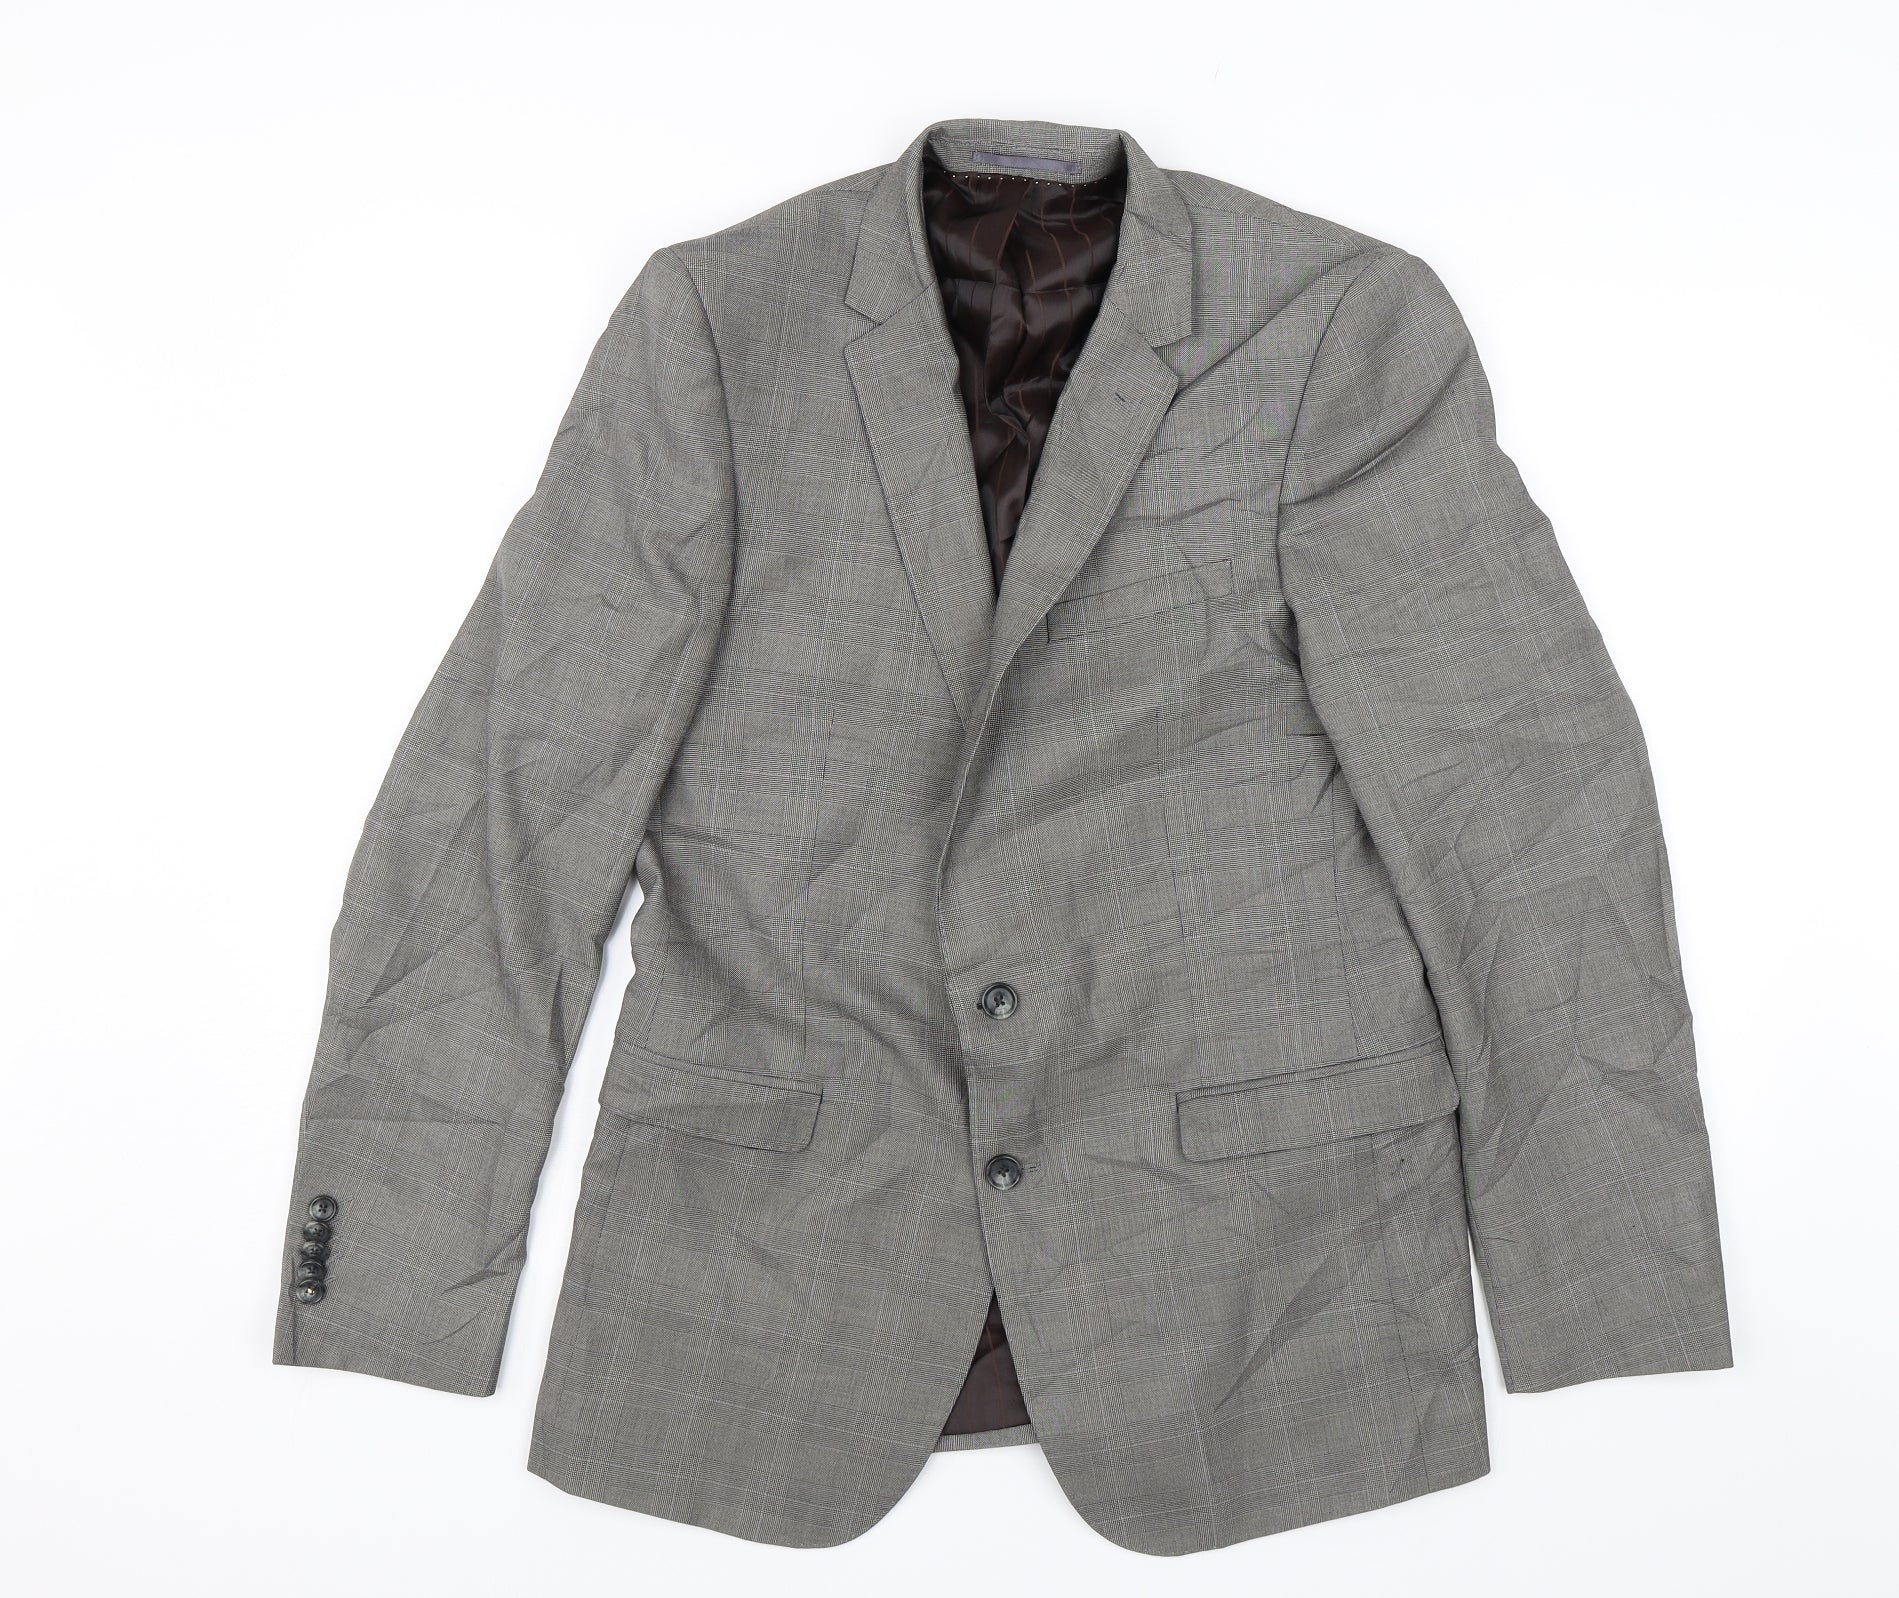 Feraud Mens Grey Jacket Suit Jacket Size 38 Rewards - Monetha